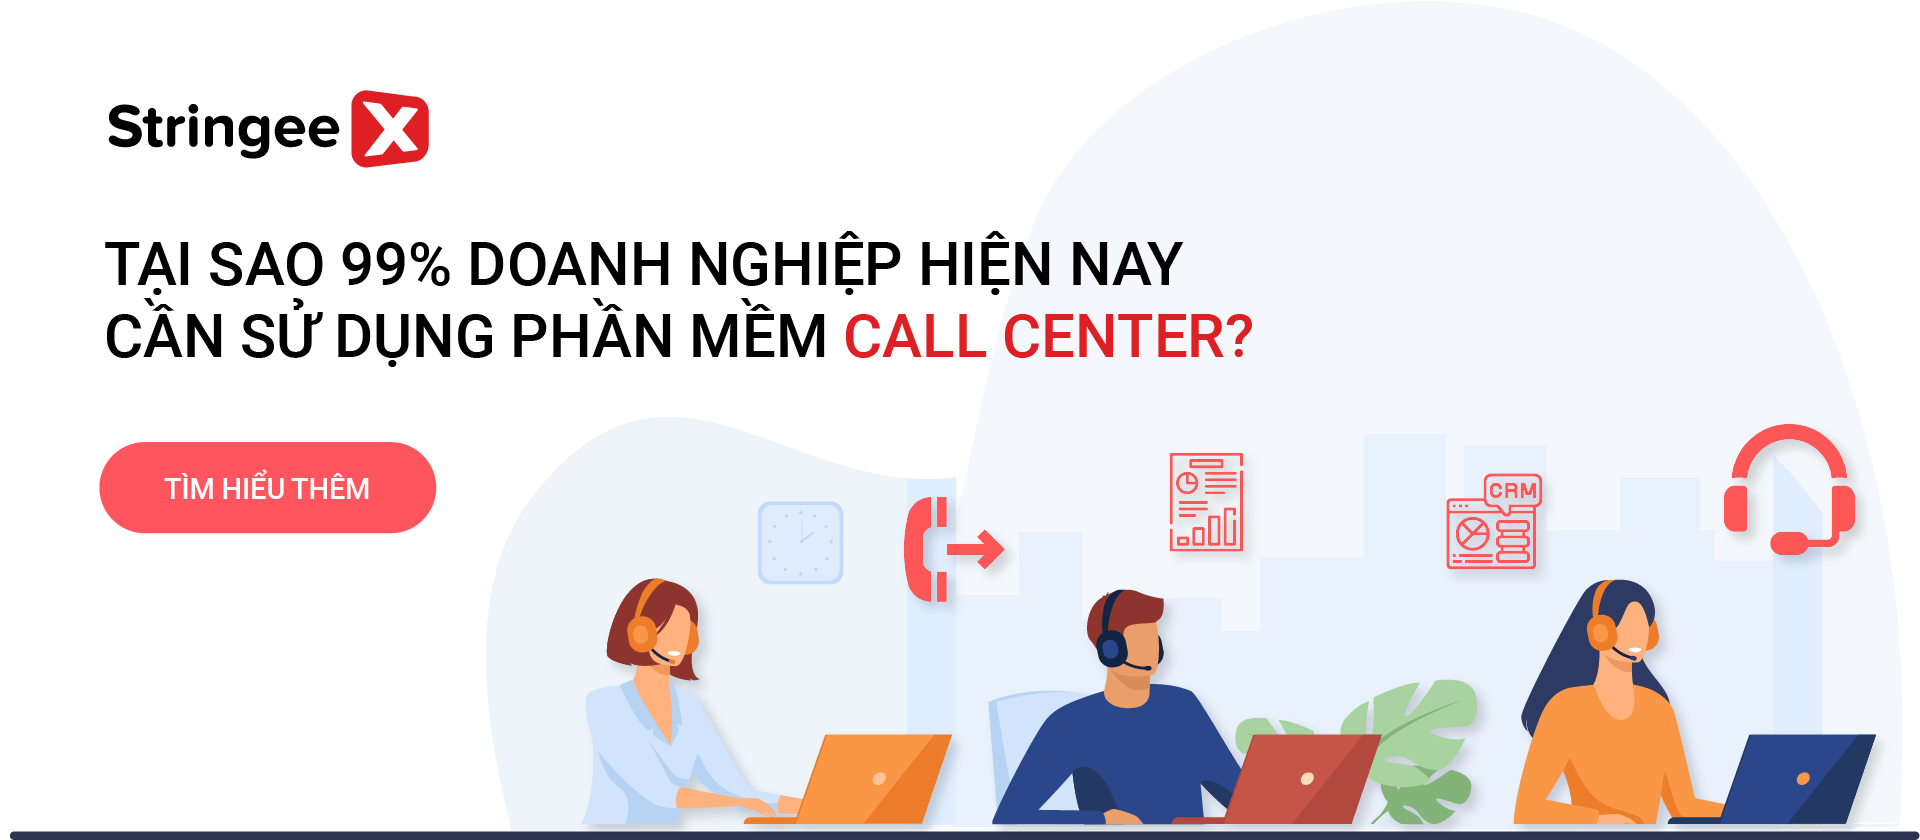 Tại sao 99% doanh nghiệp hiện nay cần sử dụng phần mềm Call center?